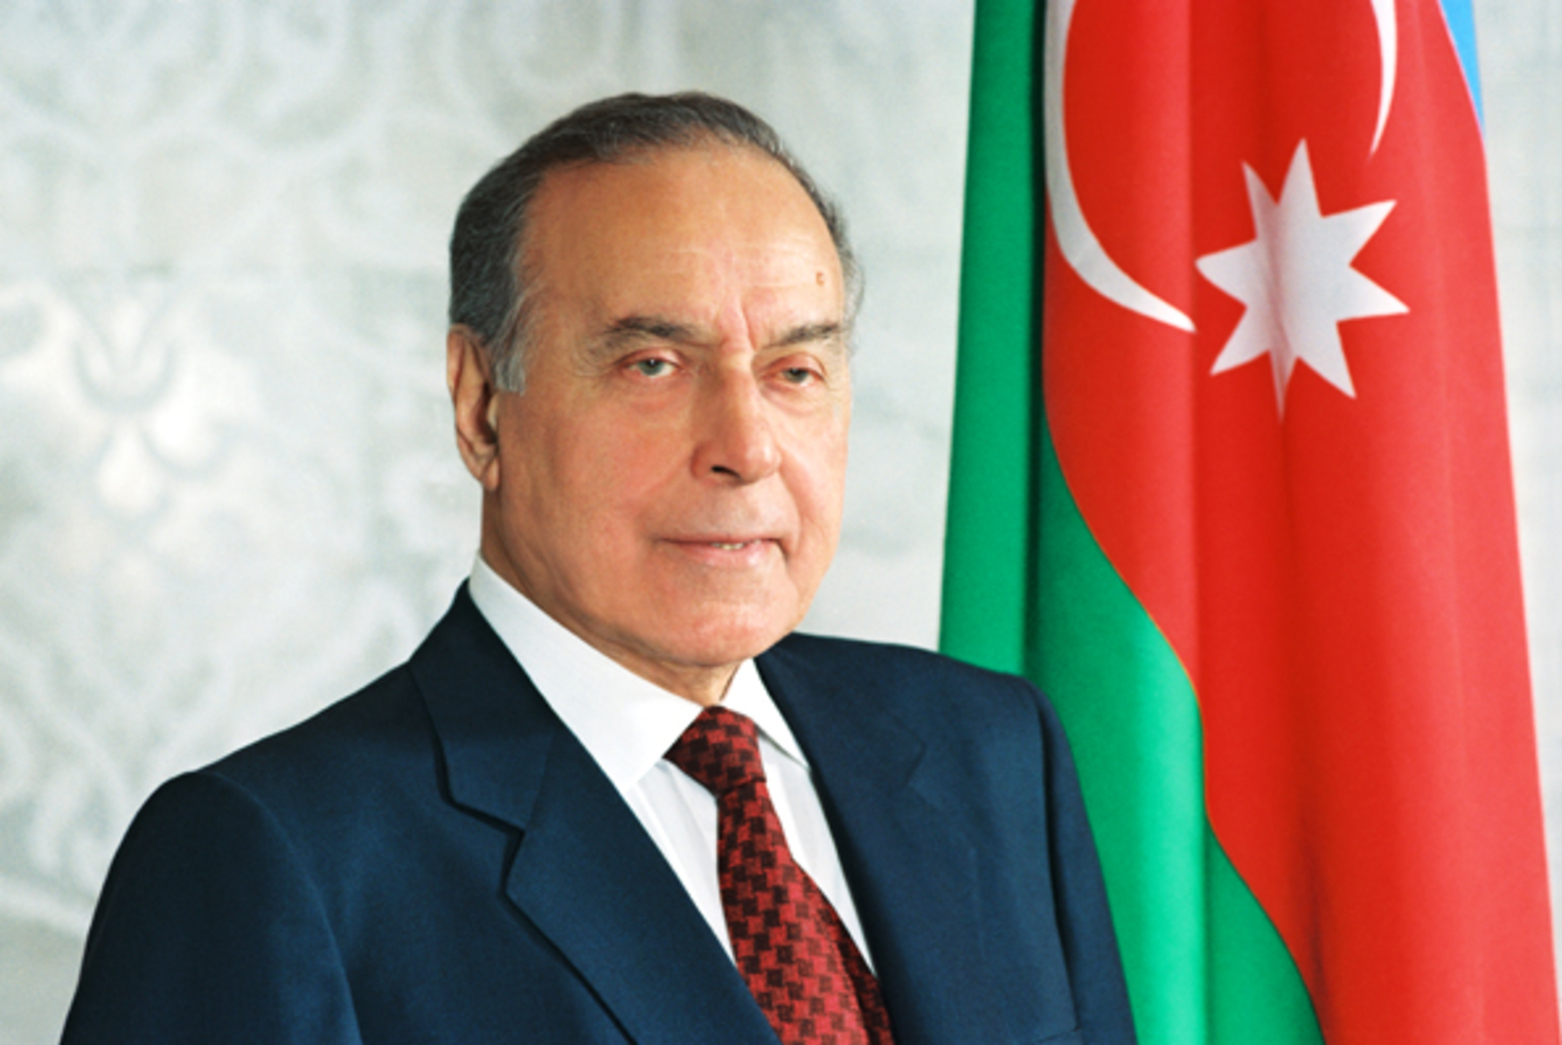 Heydər Əliyev Azərbaycan Xalqının Unudulmaz Lideridir